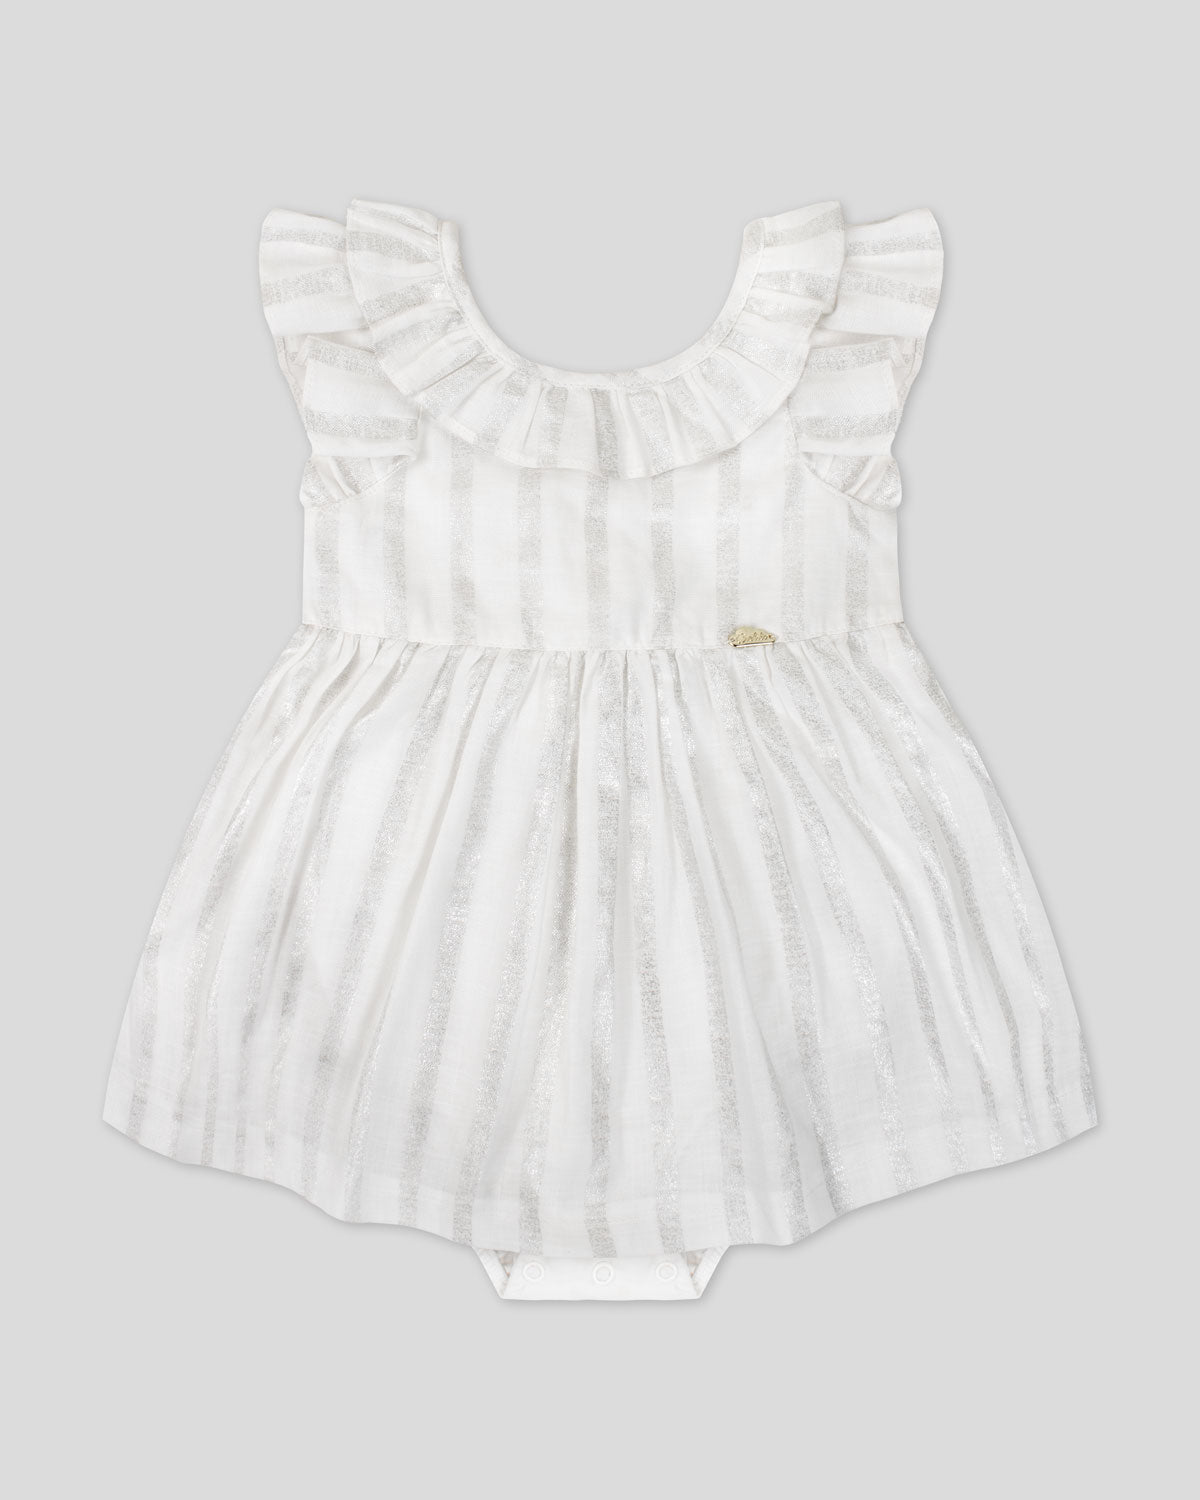 Vestido body blanco de líneas plateadas con boleros y moño en espalda para bebé niña